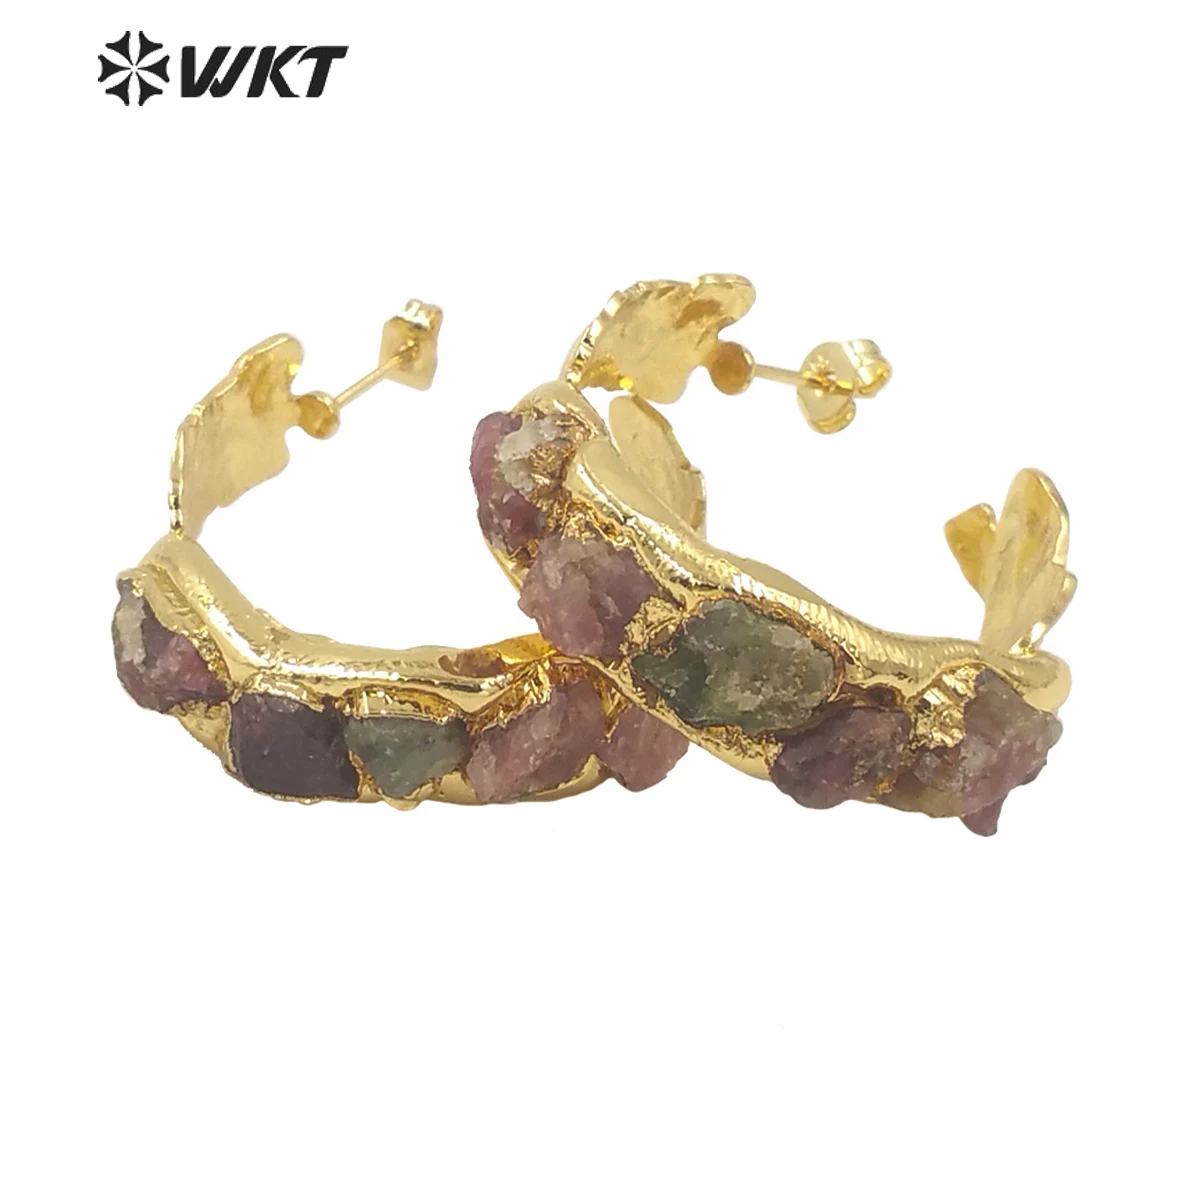 WT-E661 WKT Surperior Качественные большие C-образные модные серьги Genshin с драгоценными камнями в стиле OL, натуральные драгоценные украшения для вече...